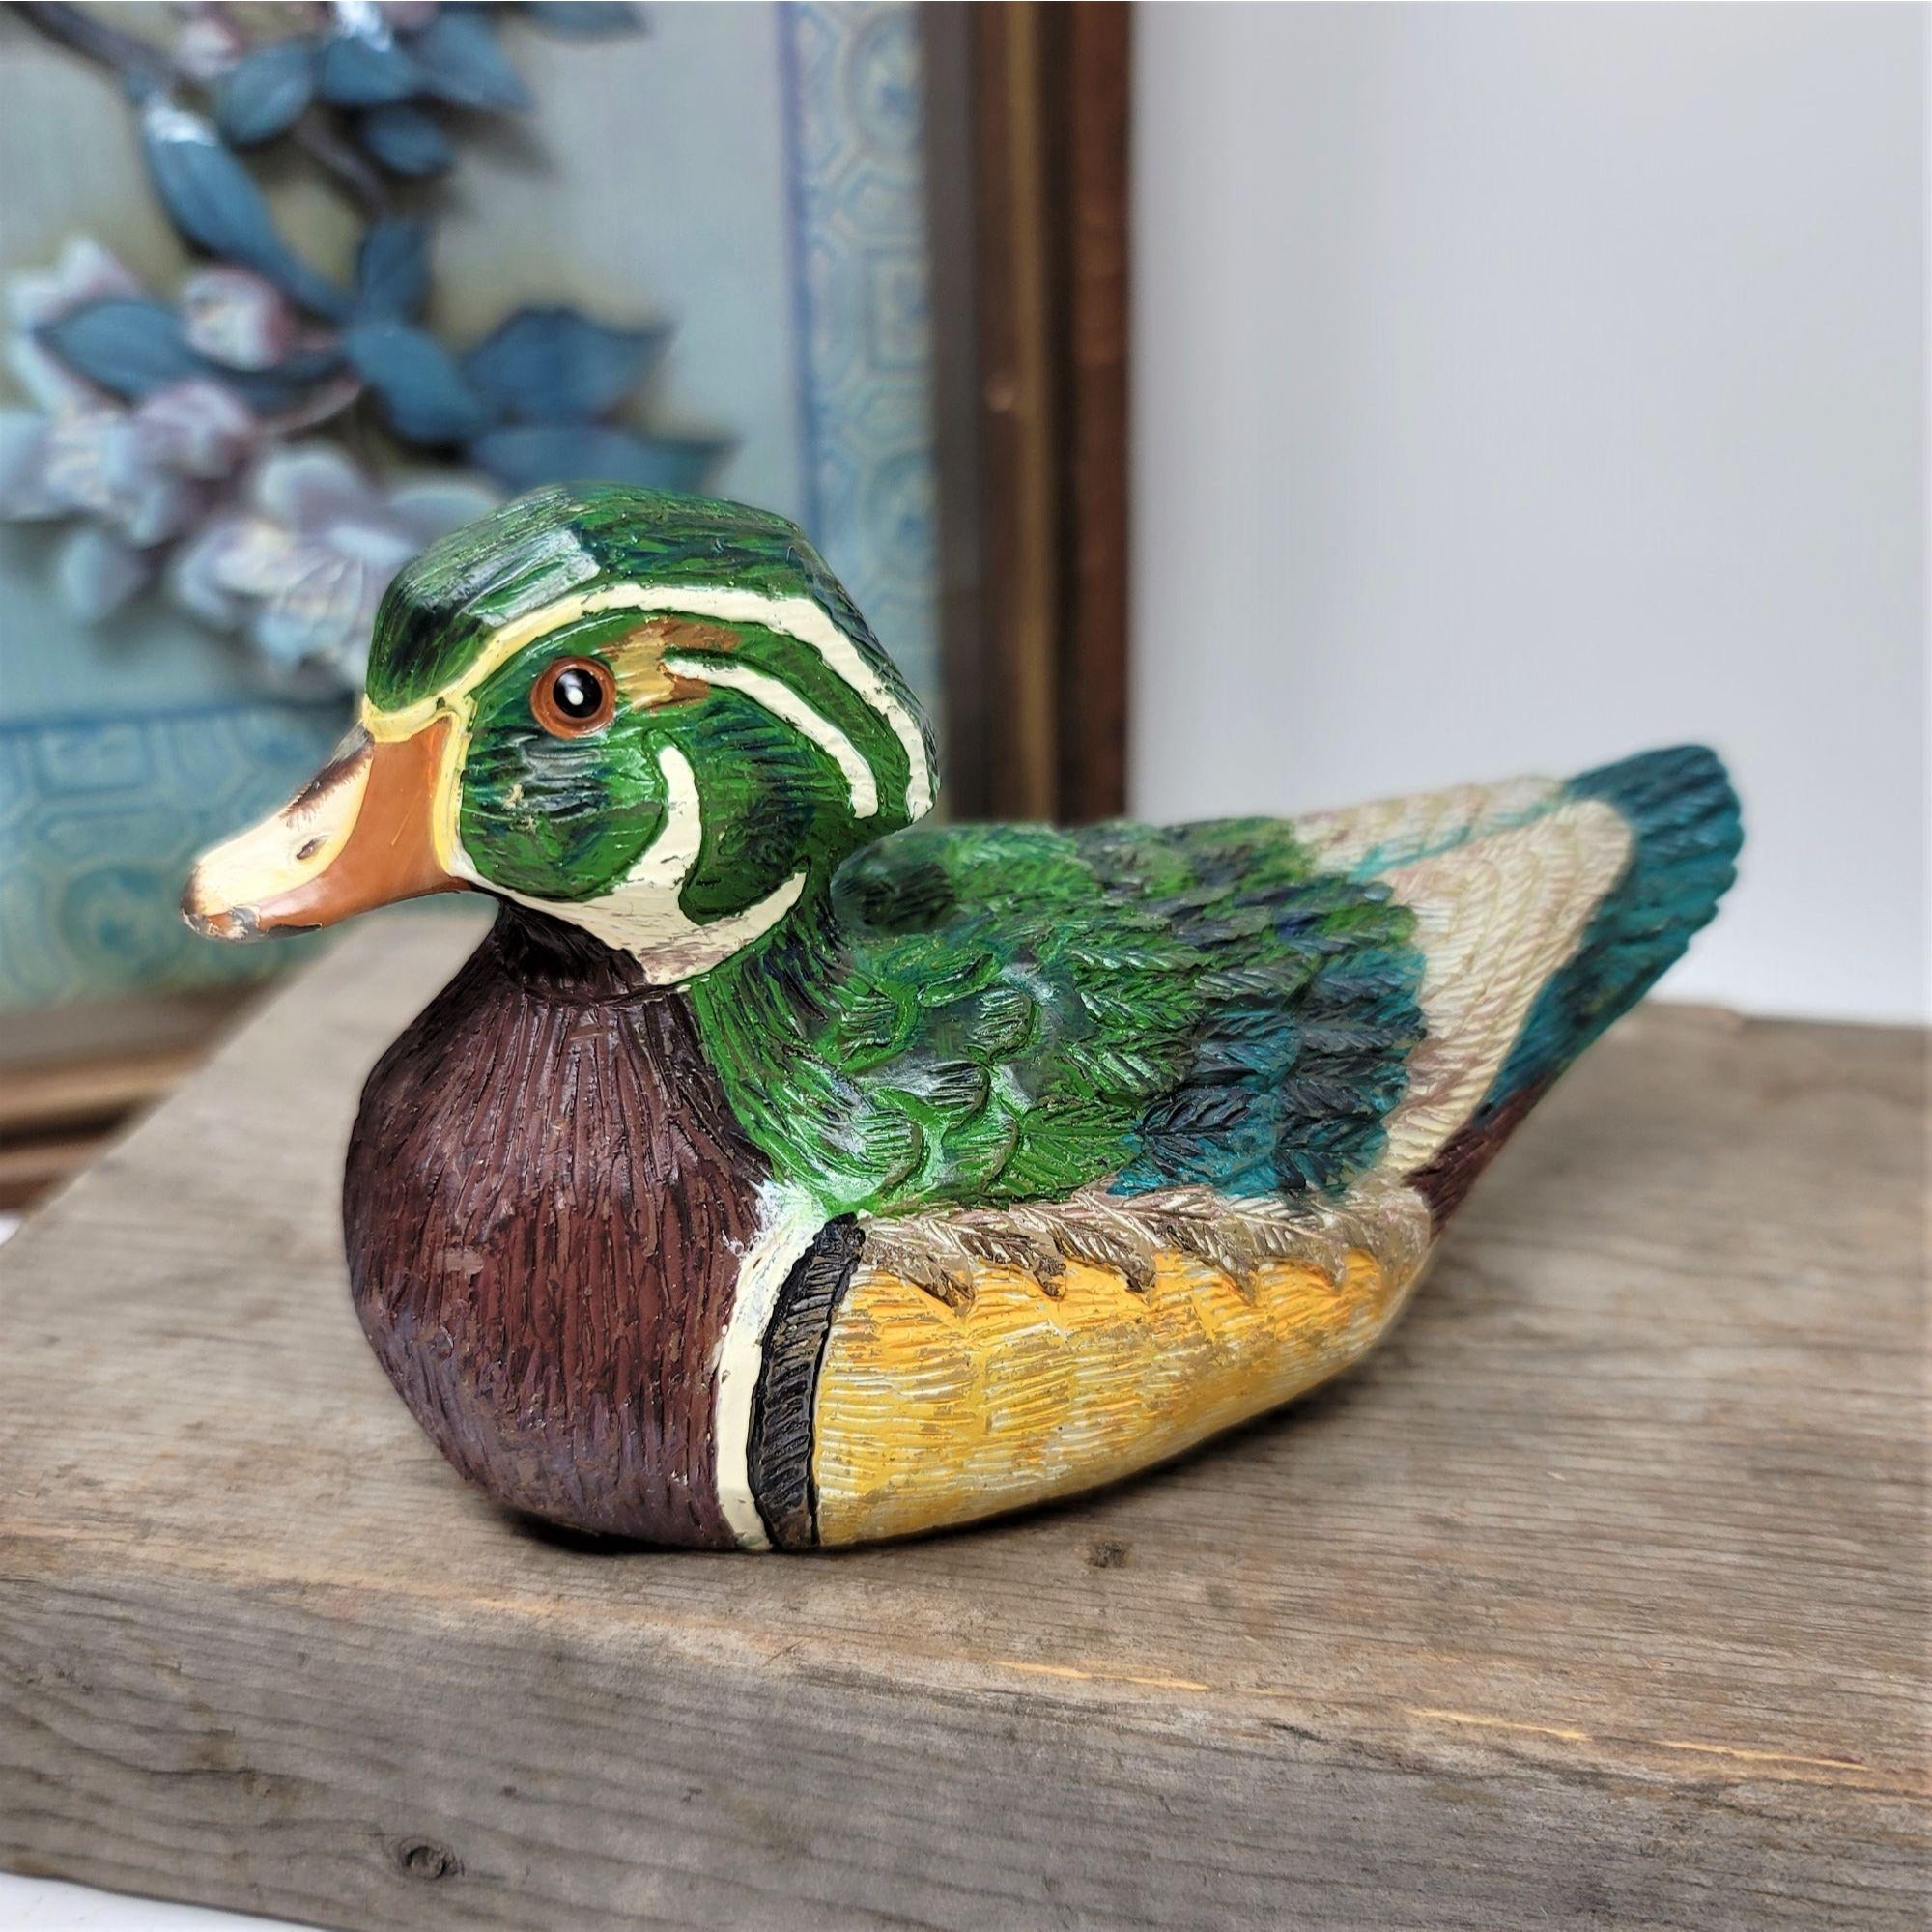 Vintage Handpainted Wax Duck Sculpture RUSS BERRIE